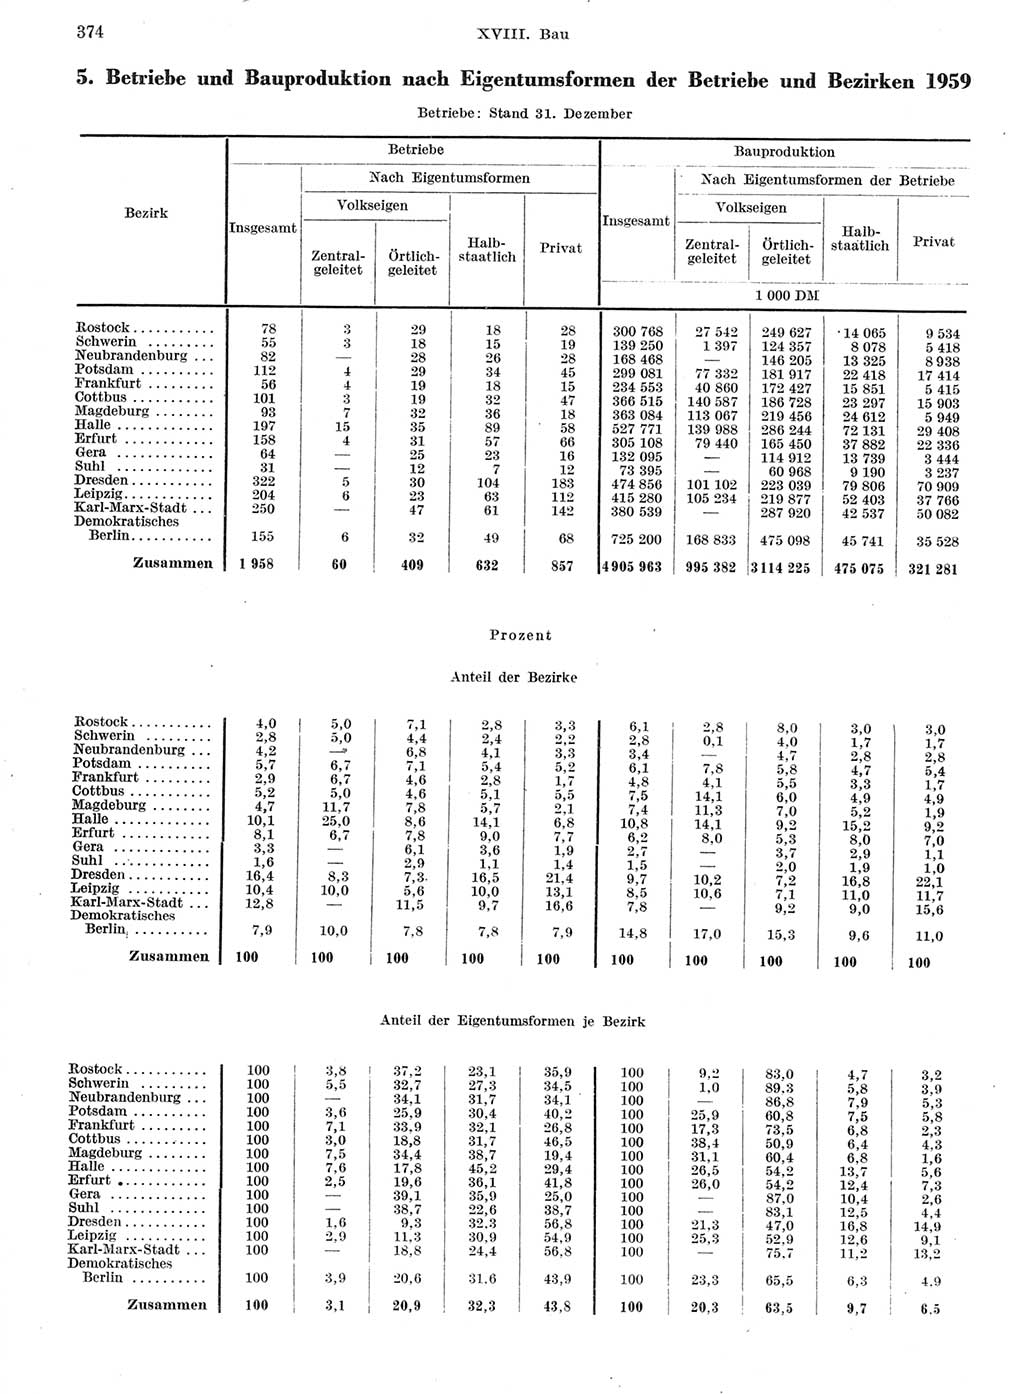 Statistisches Jahrbuch der Deutschen Demokratischen Republik (DDR) 1959, Seite 374 (Stat. Jb. DDR 1959, S. 374)